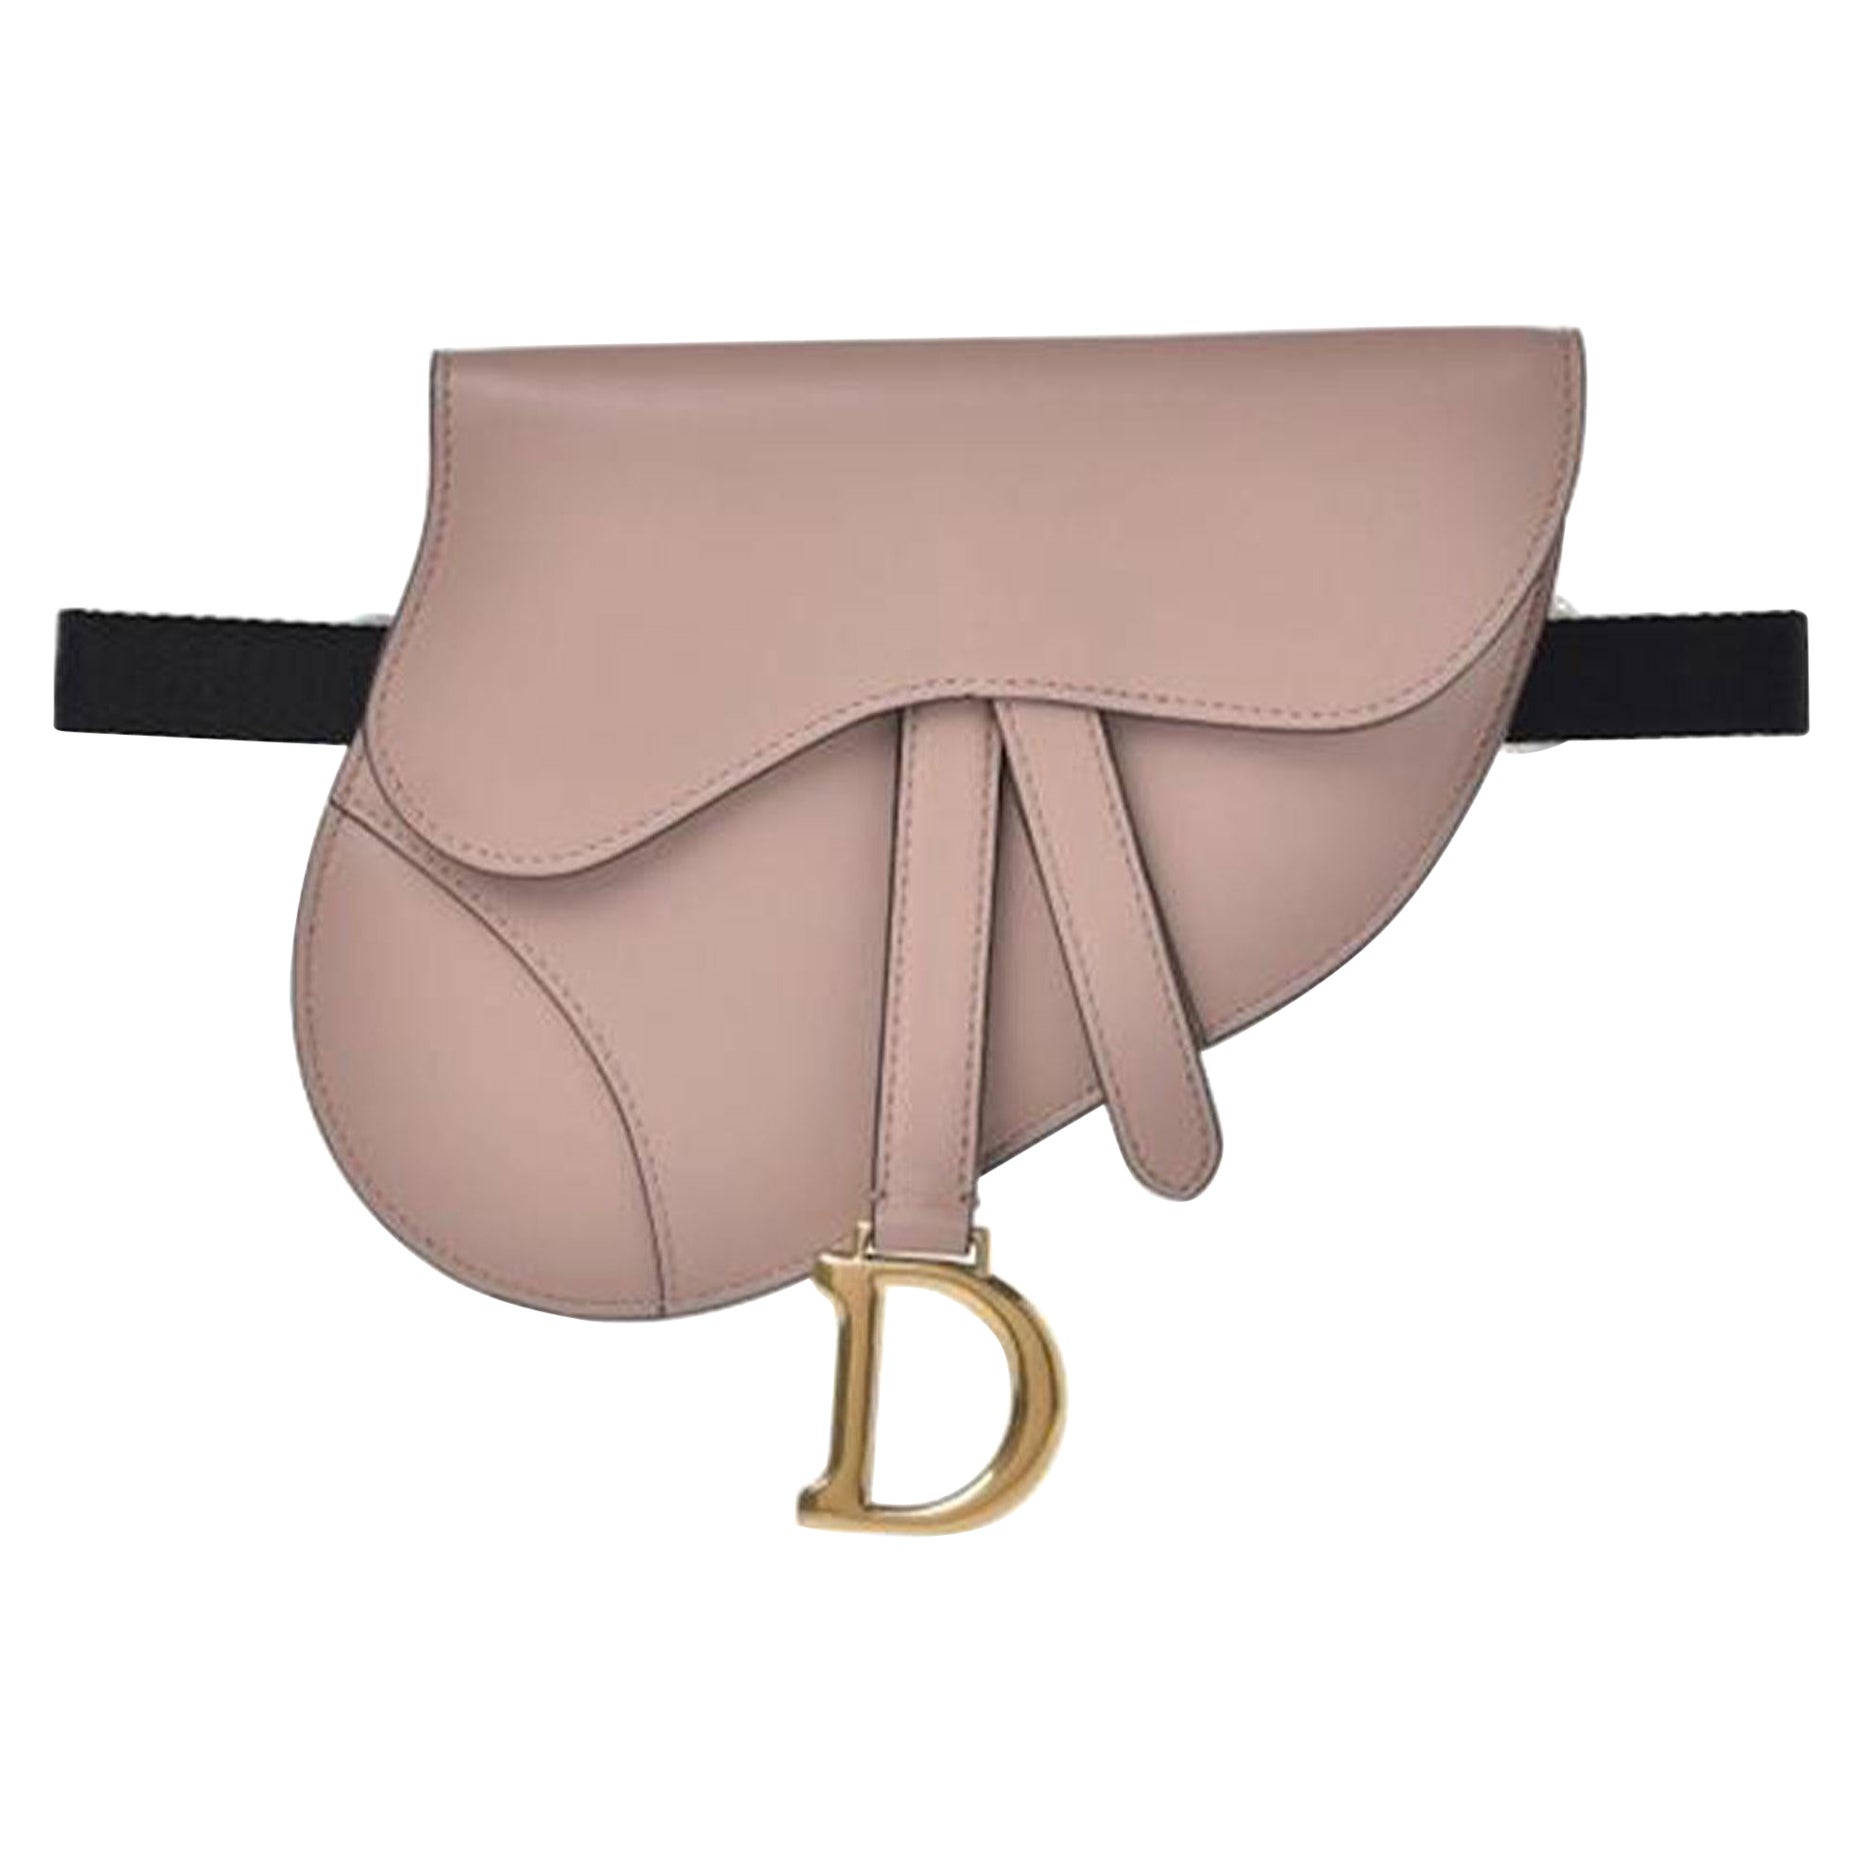 Dior Belt Waist Saddle Fanny Pack Limited Edition Soldout Blush Beige Pink Bag